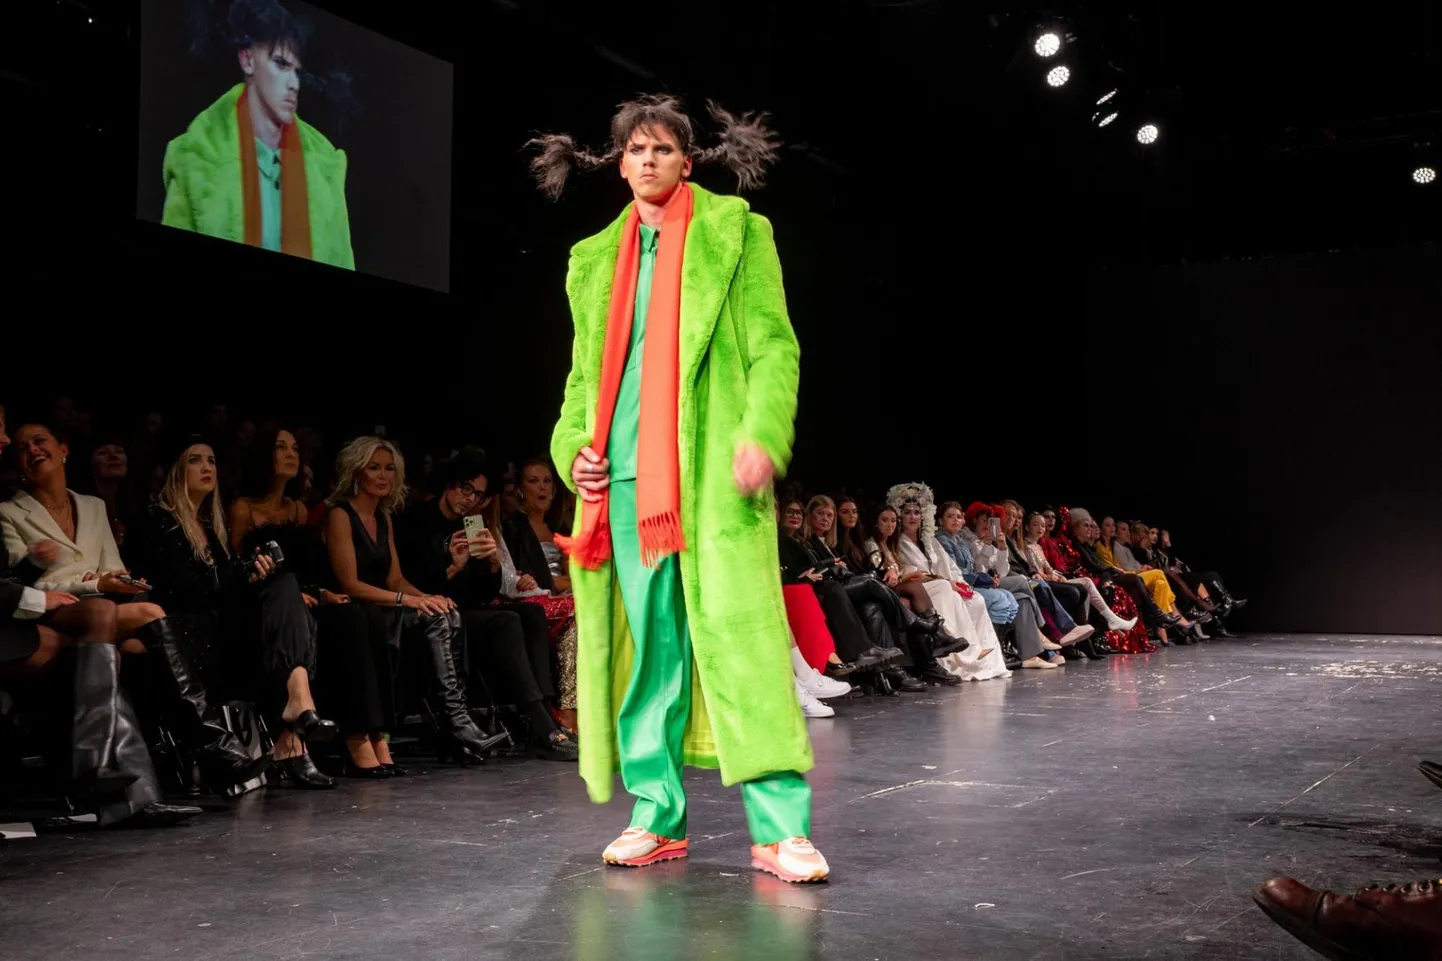 Пипи Майро Сеире из коллекции Ansia на осенней Неделе моды в Таллинне. На ярмарке моды ERKI он представляет коллекцию «FILO».